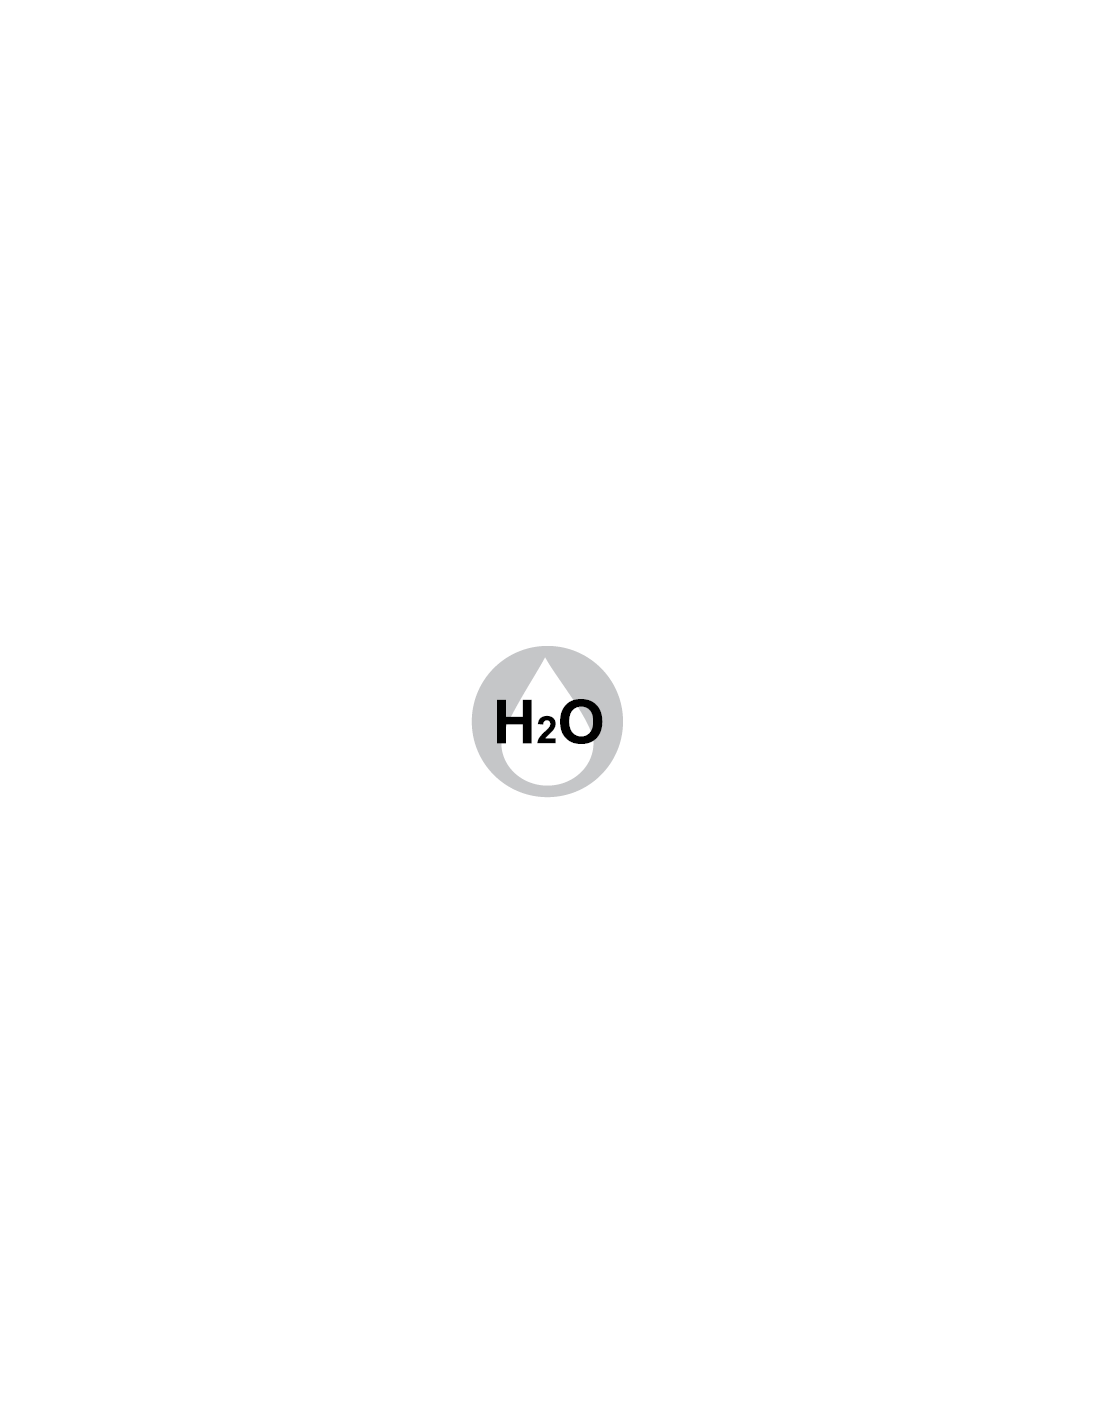 Condensazione H2O - Modello Marilyn-Snelle-Diva-Saloon-Karina-Brio